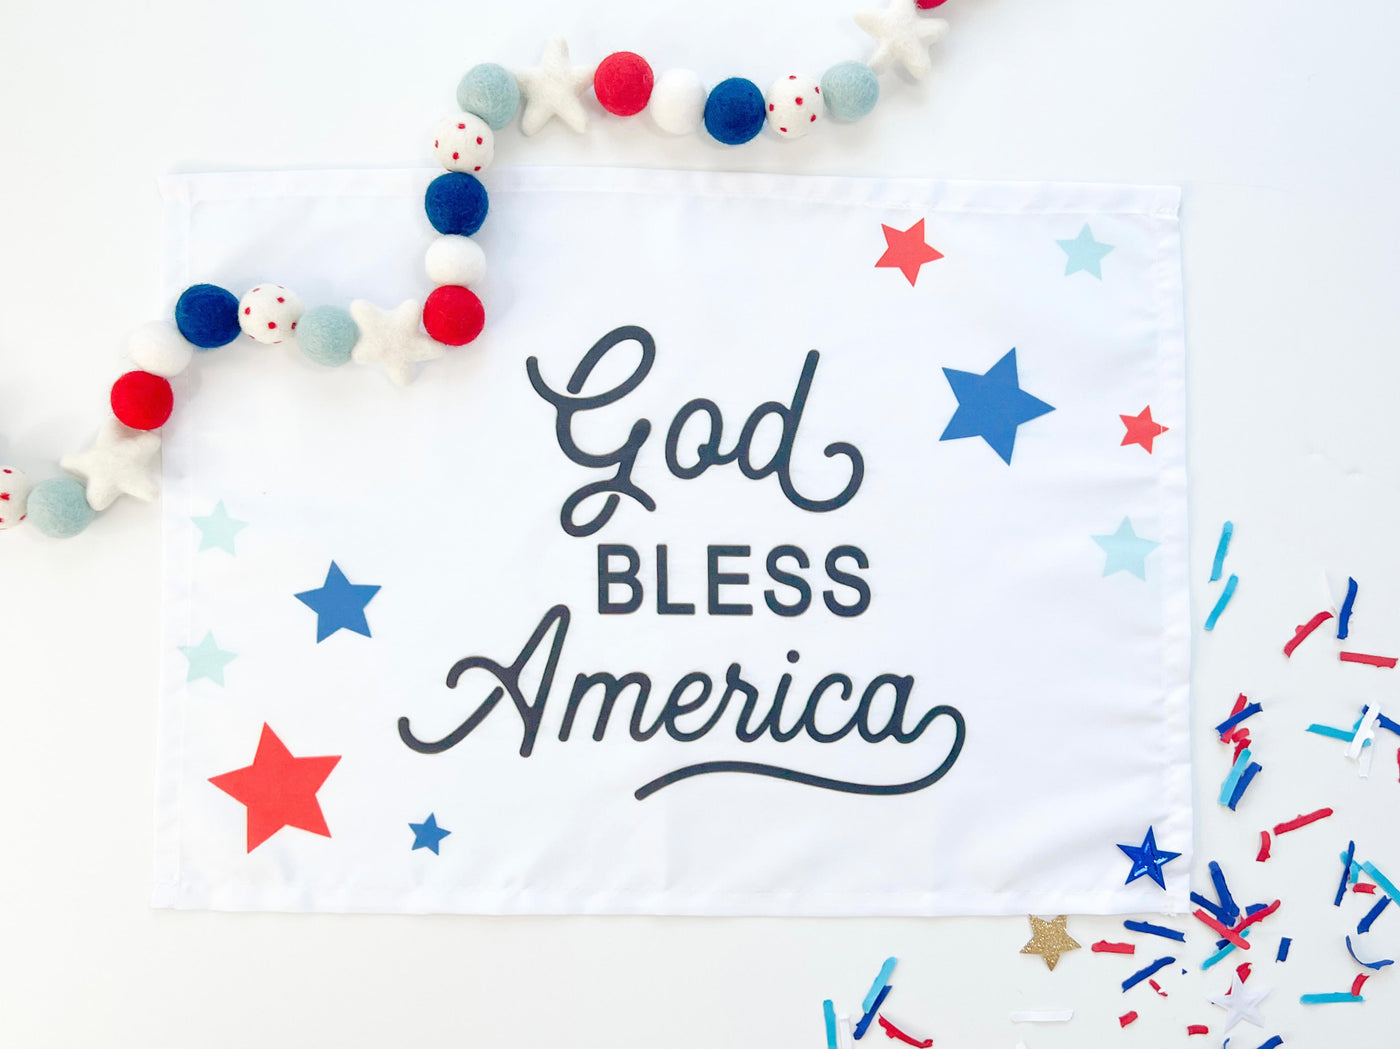 God Bless America Banner©